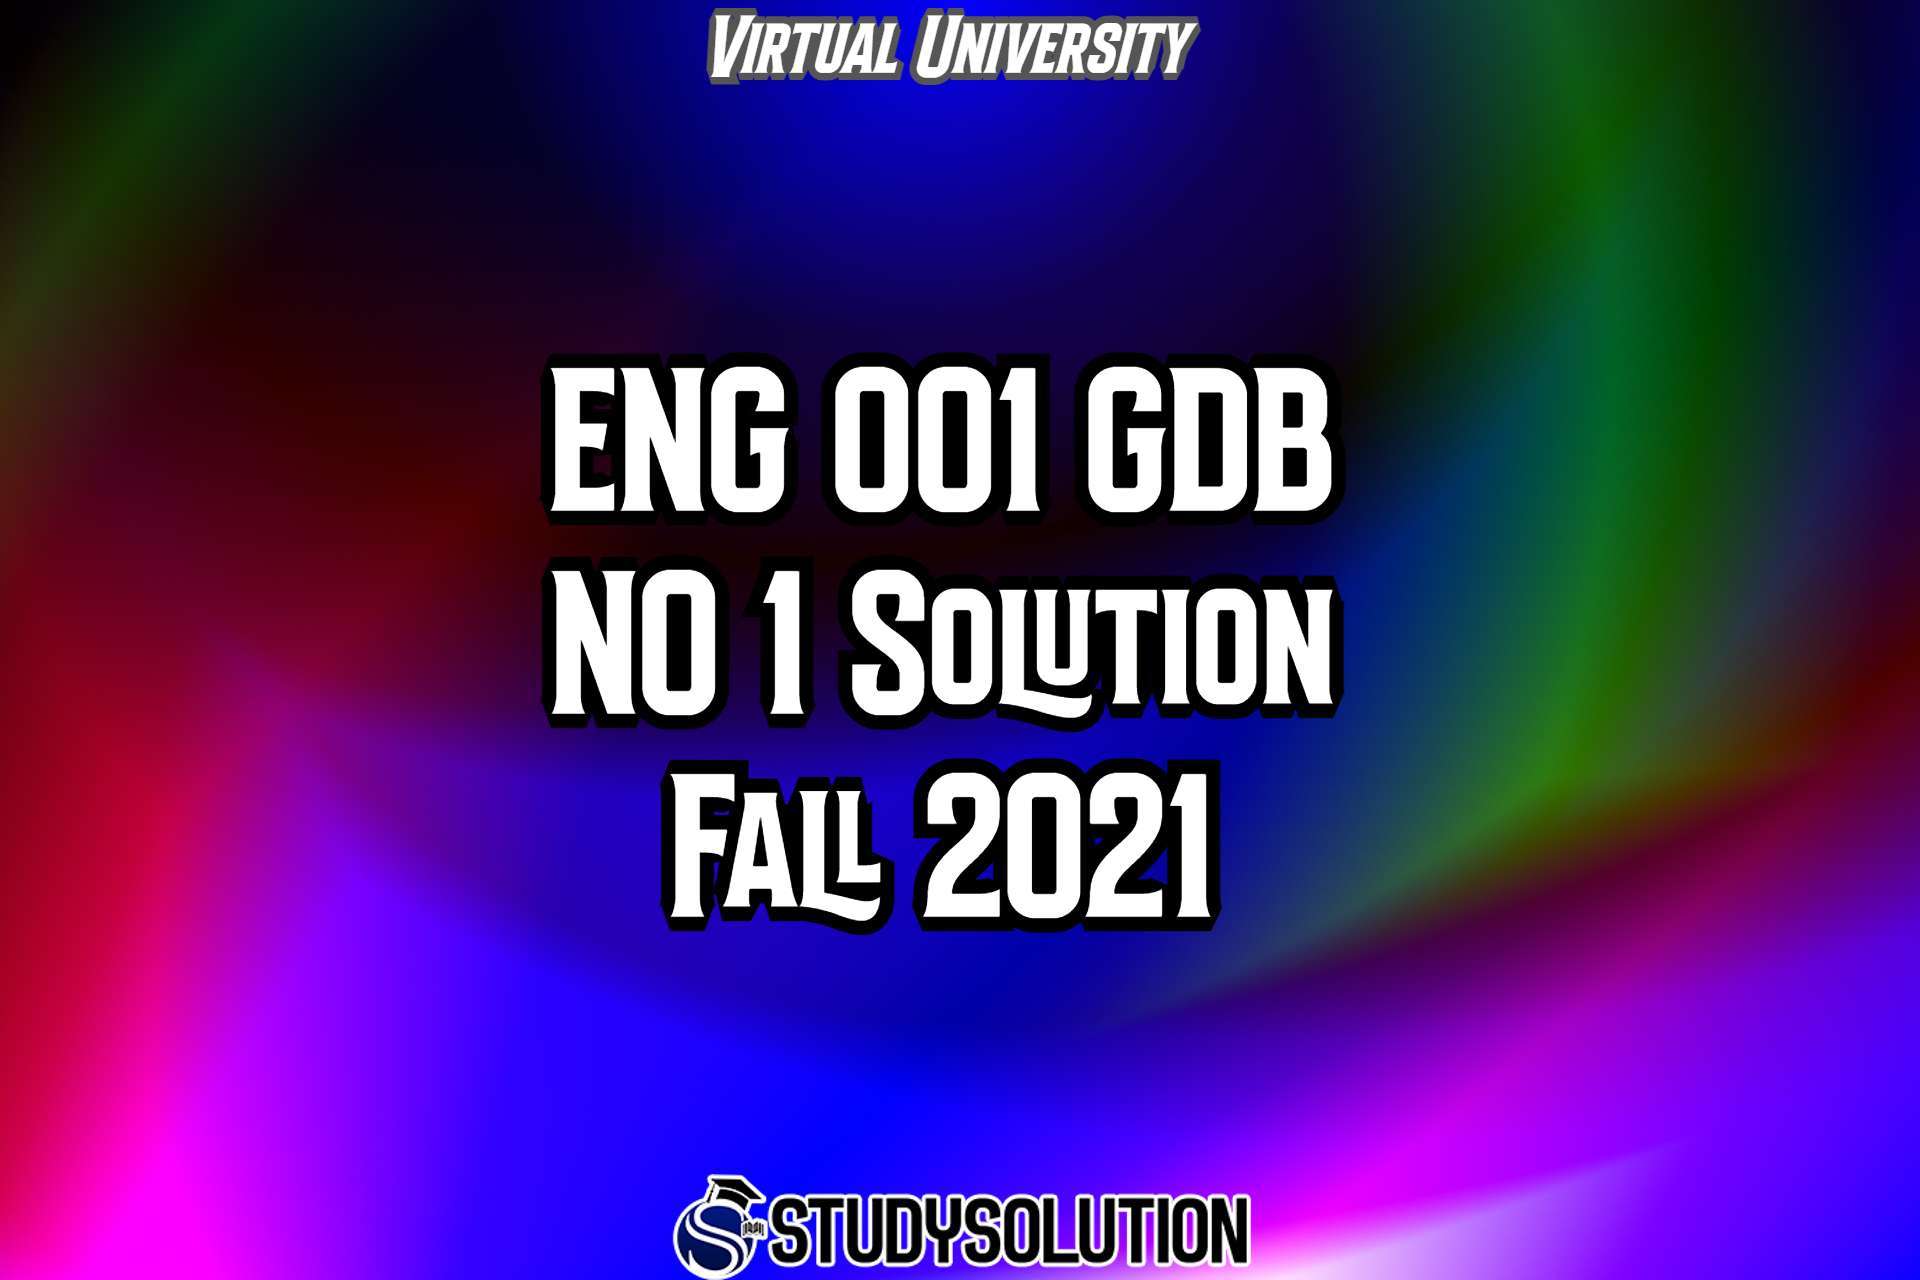 ENG001 GDB No 1 Solution Fall 2021